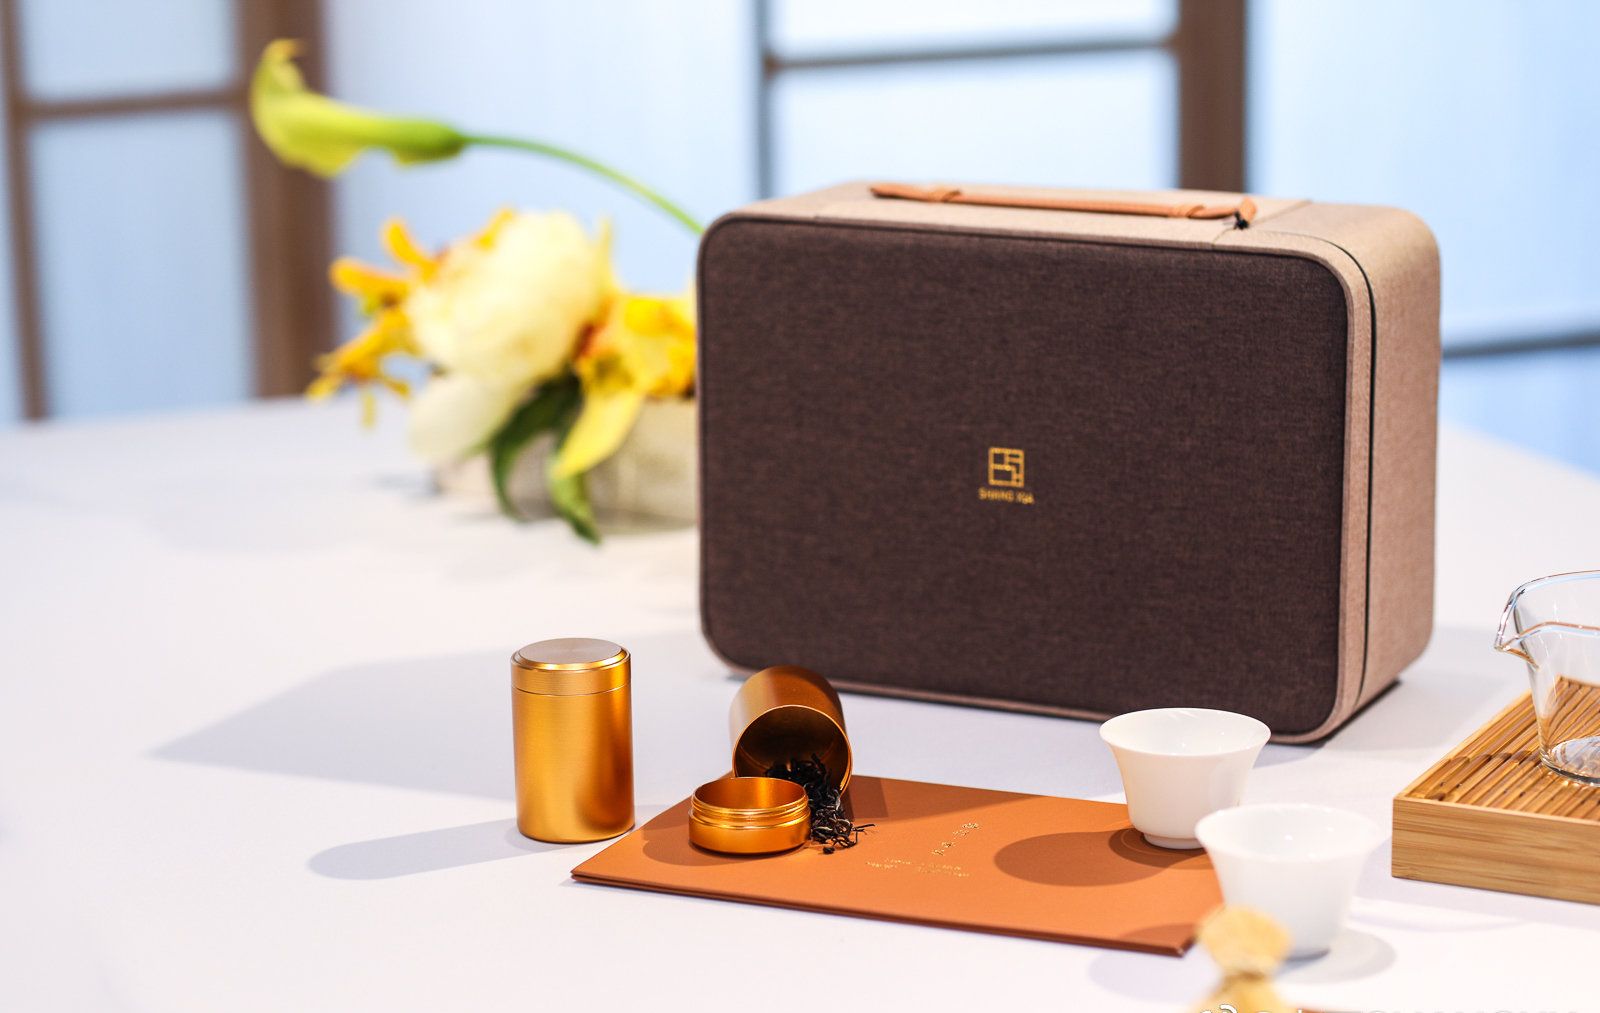 Tea box set from Shang Xia, Jiang Qionger's luxury brand